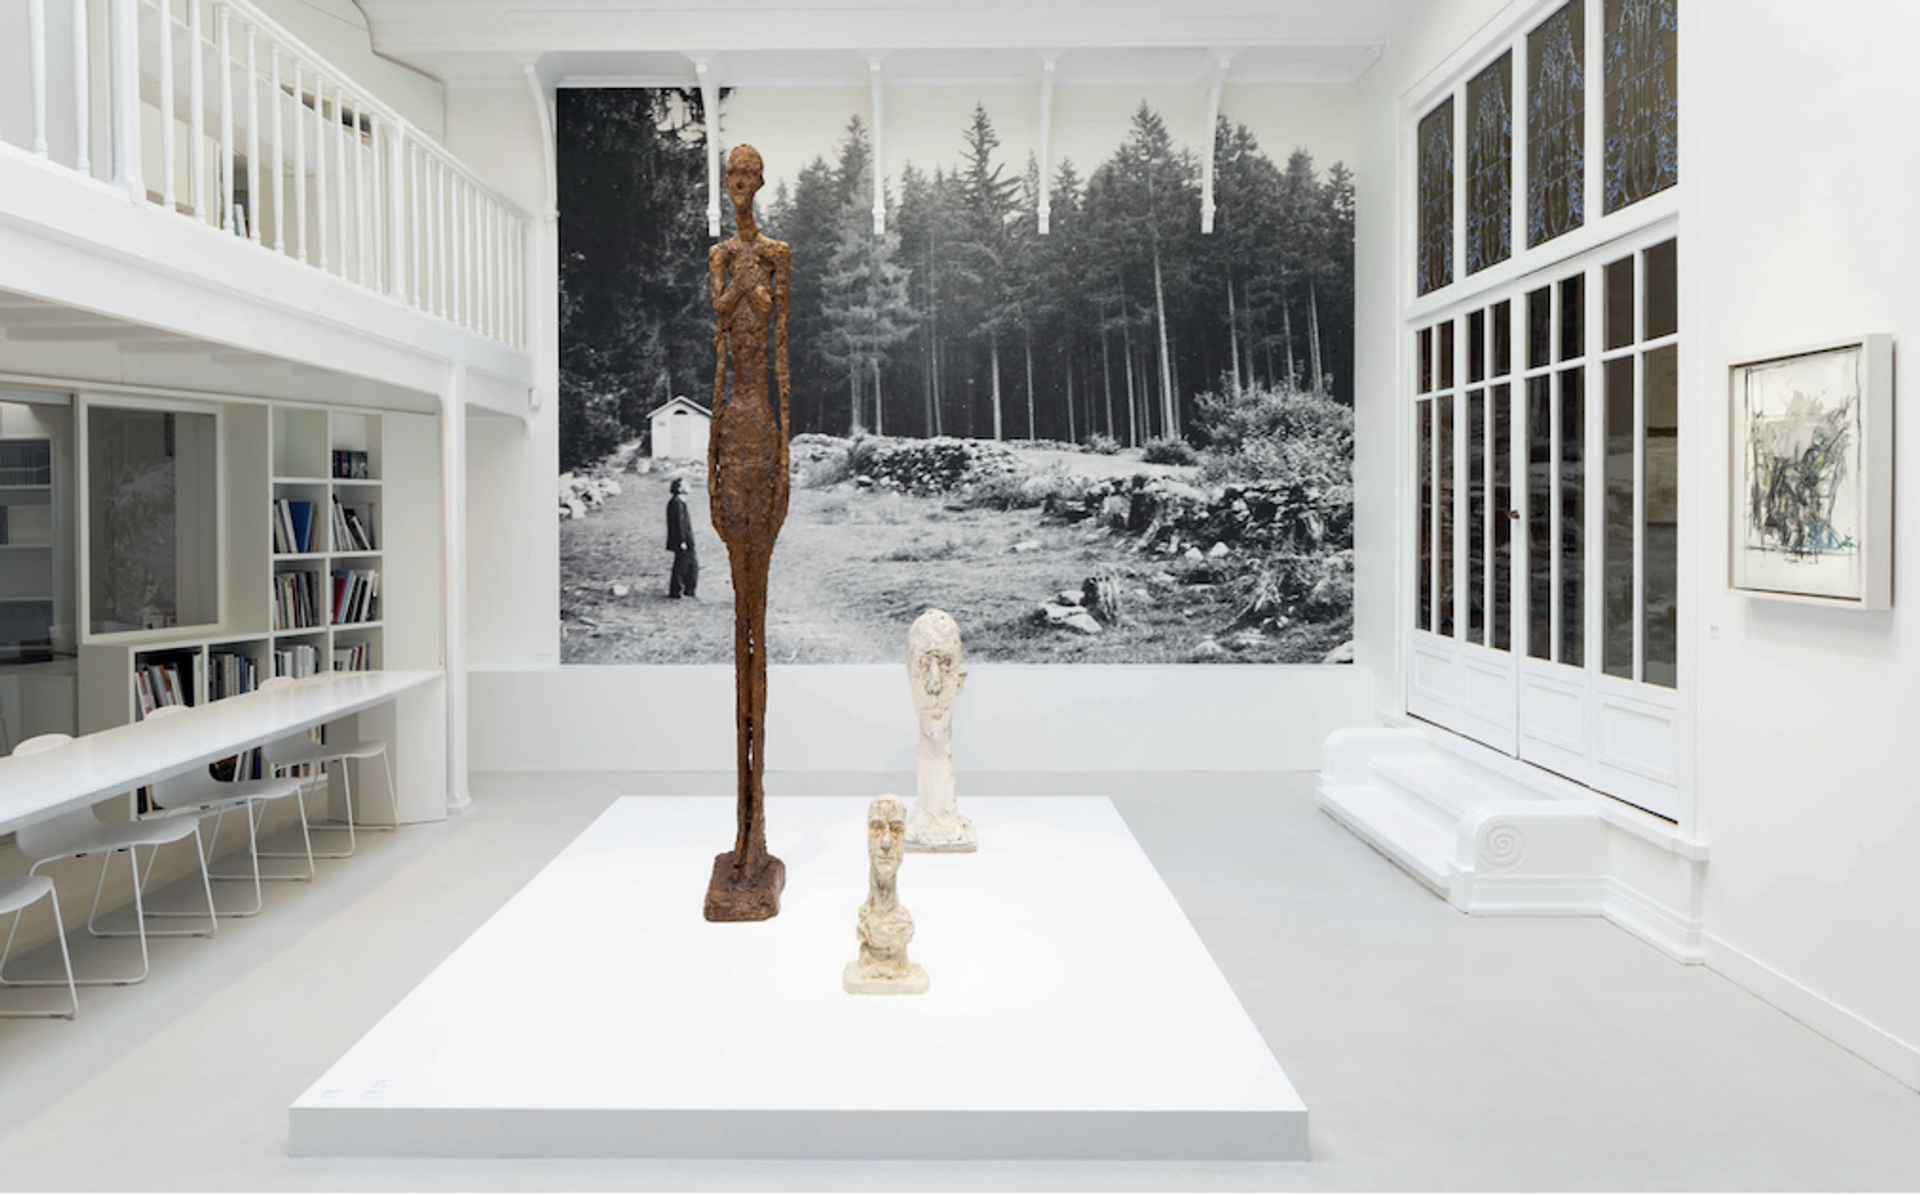 Vue de l’exposition « Alberto Giacometti. Un arbre comme une femme, une pierre comme une tête » ; Alberto Giacometti, Grande femme II (1960) et deux Grande tête (1958). © Succession Alberto Giacometti / ADAGP, Paris 2022